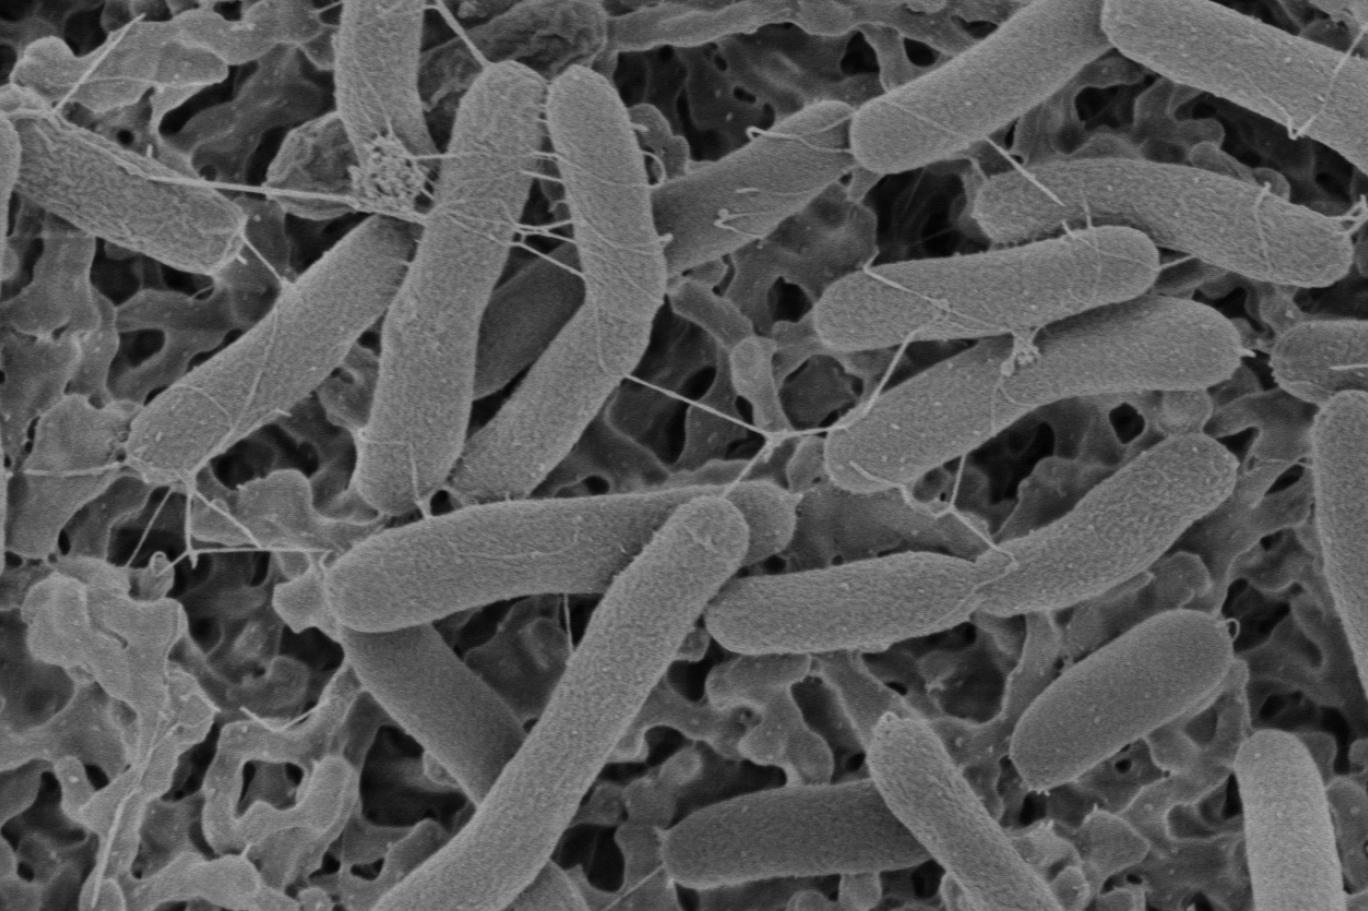 Появление первых микроорганизмов